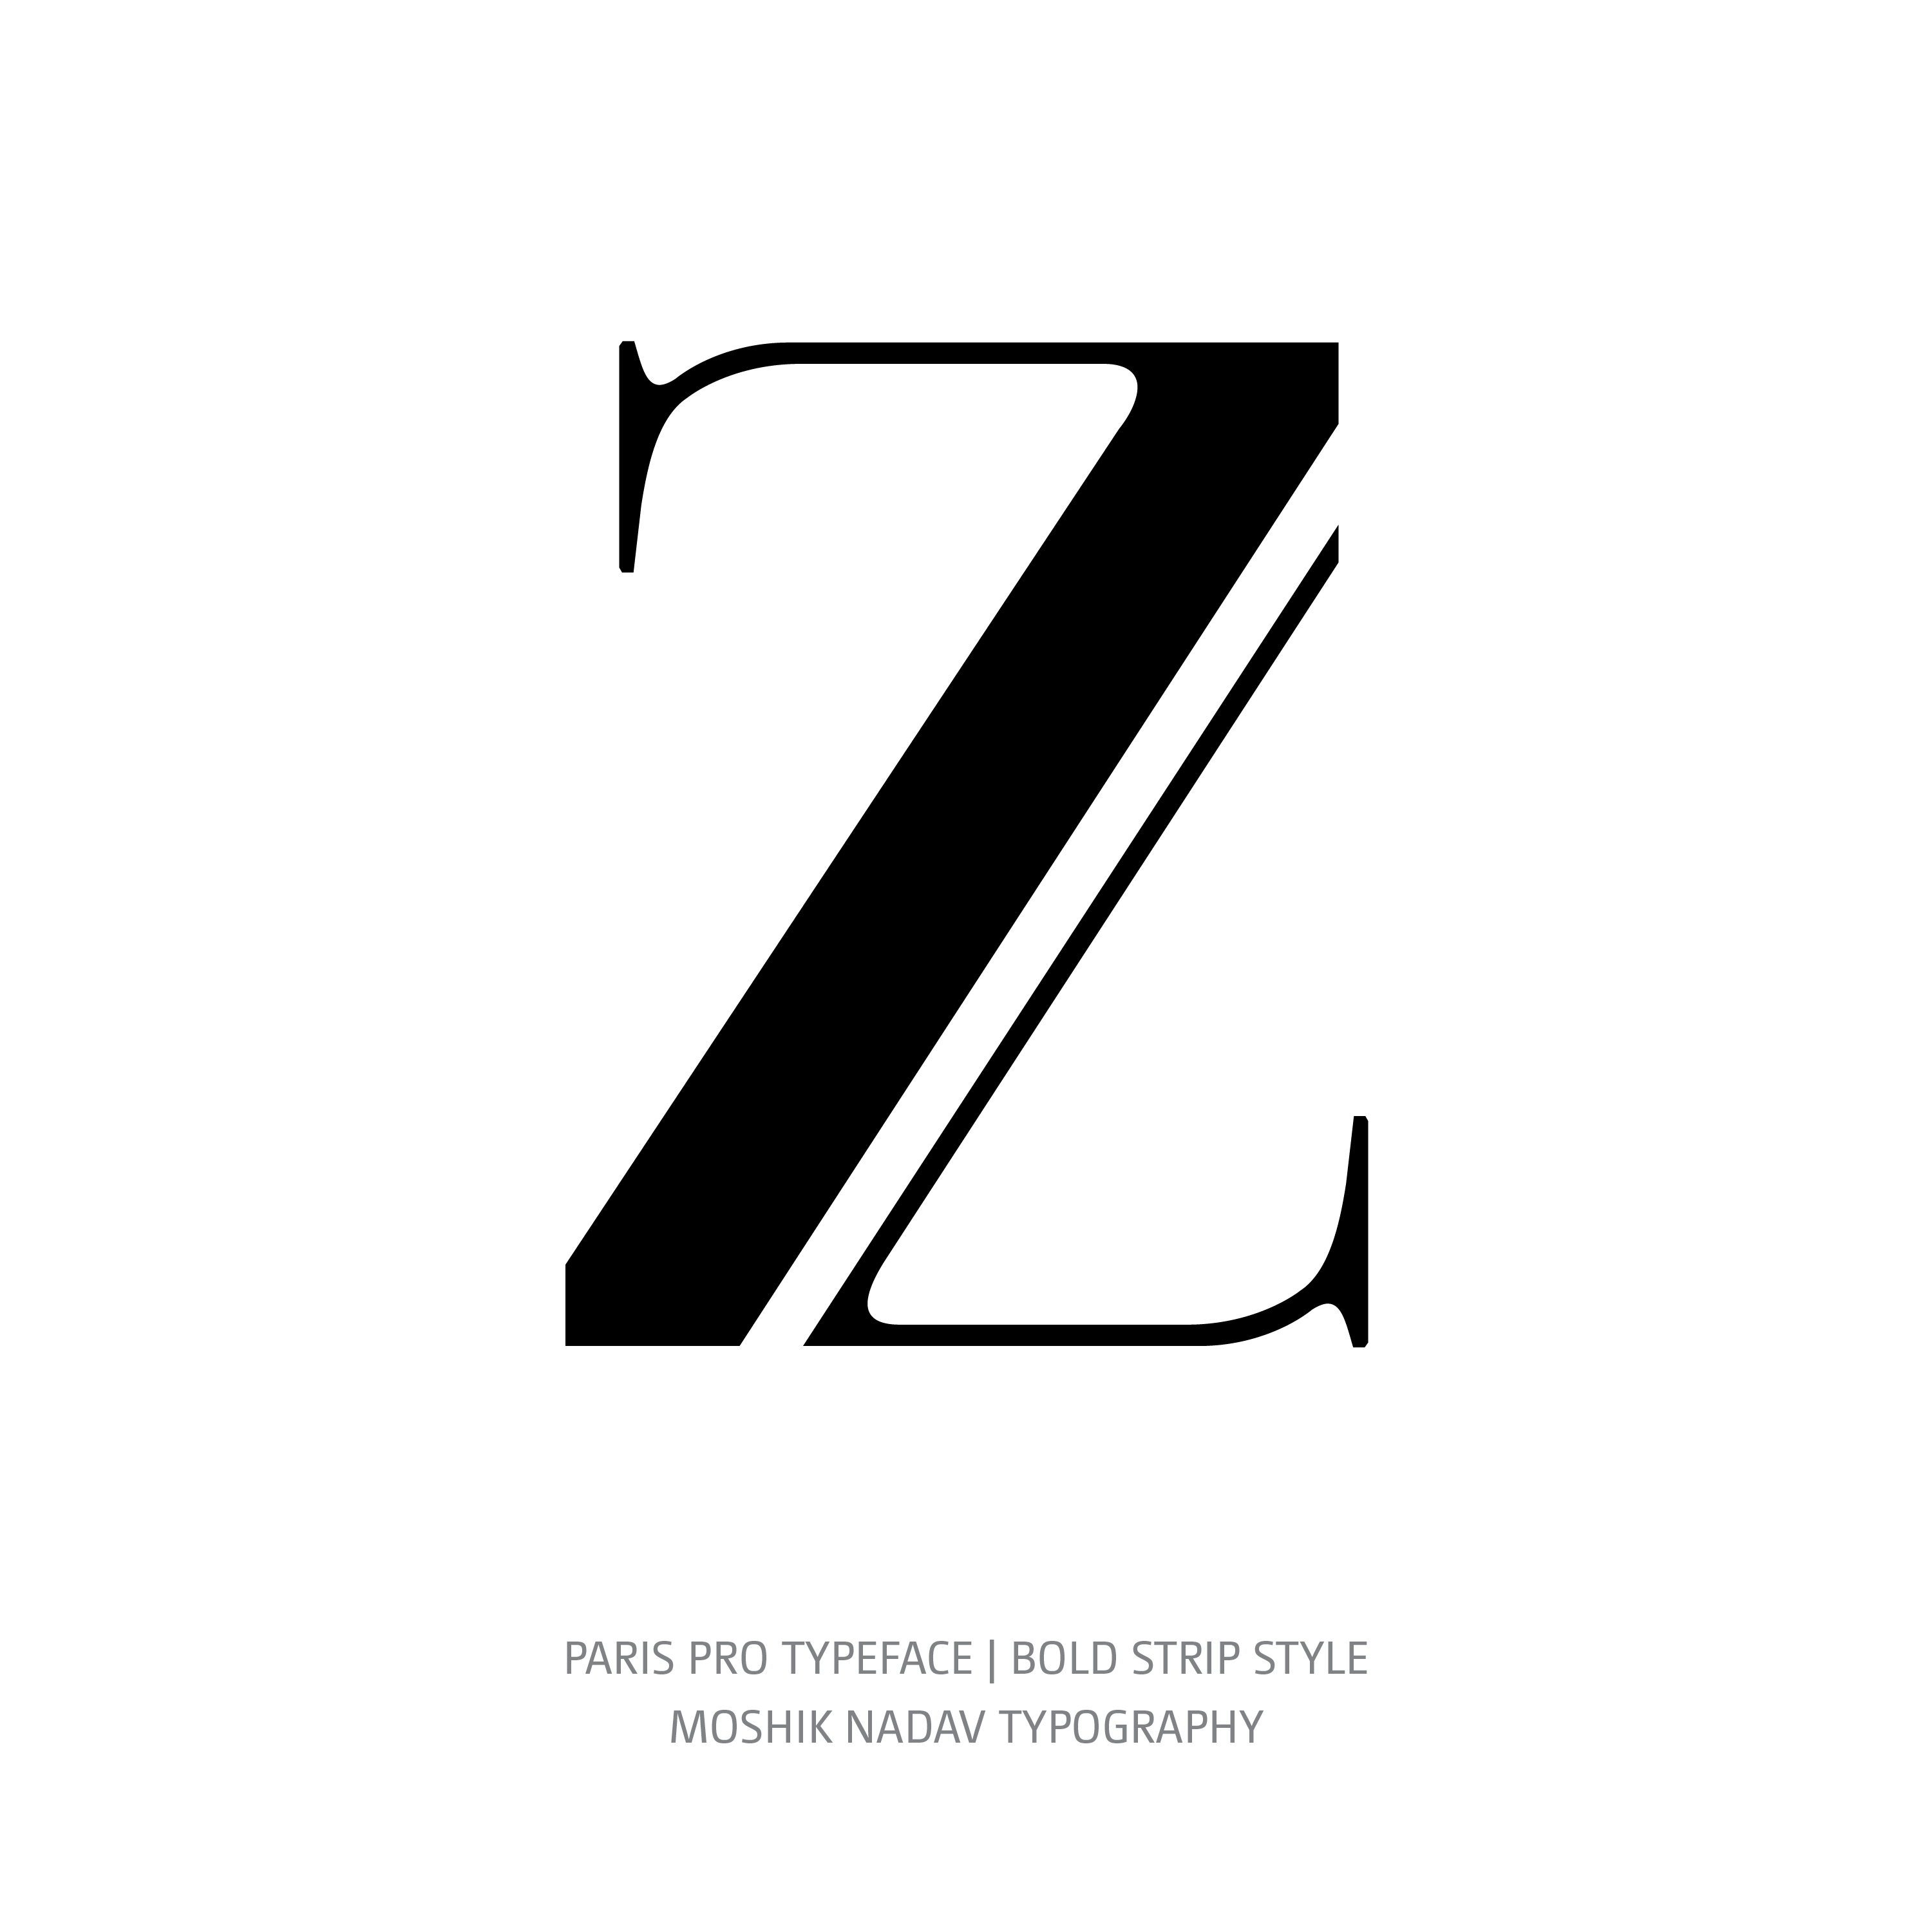 Paris Pro Typeface Bold Strip Z